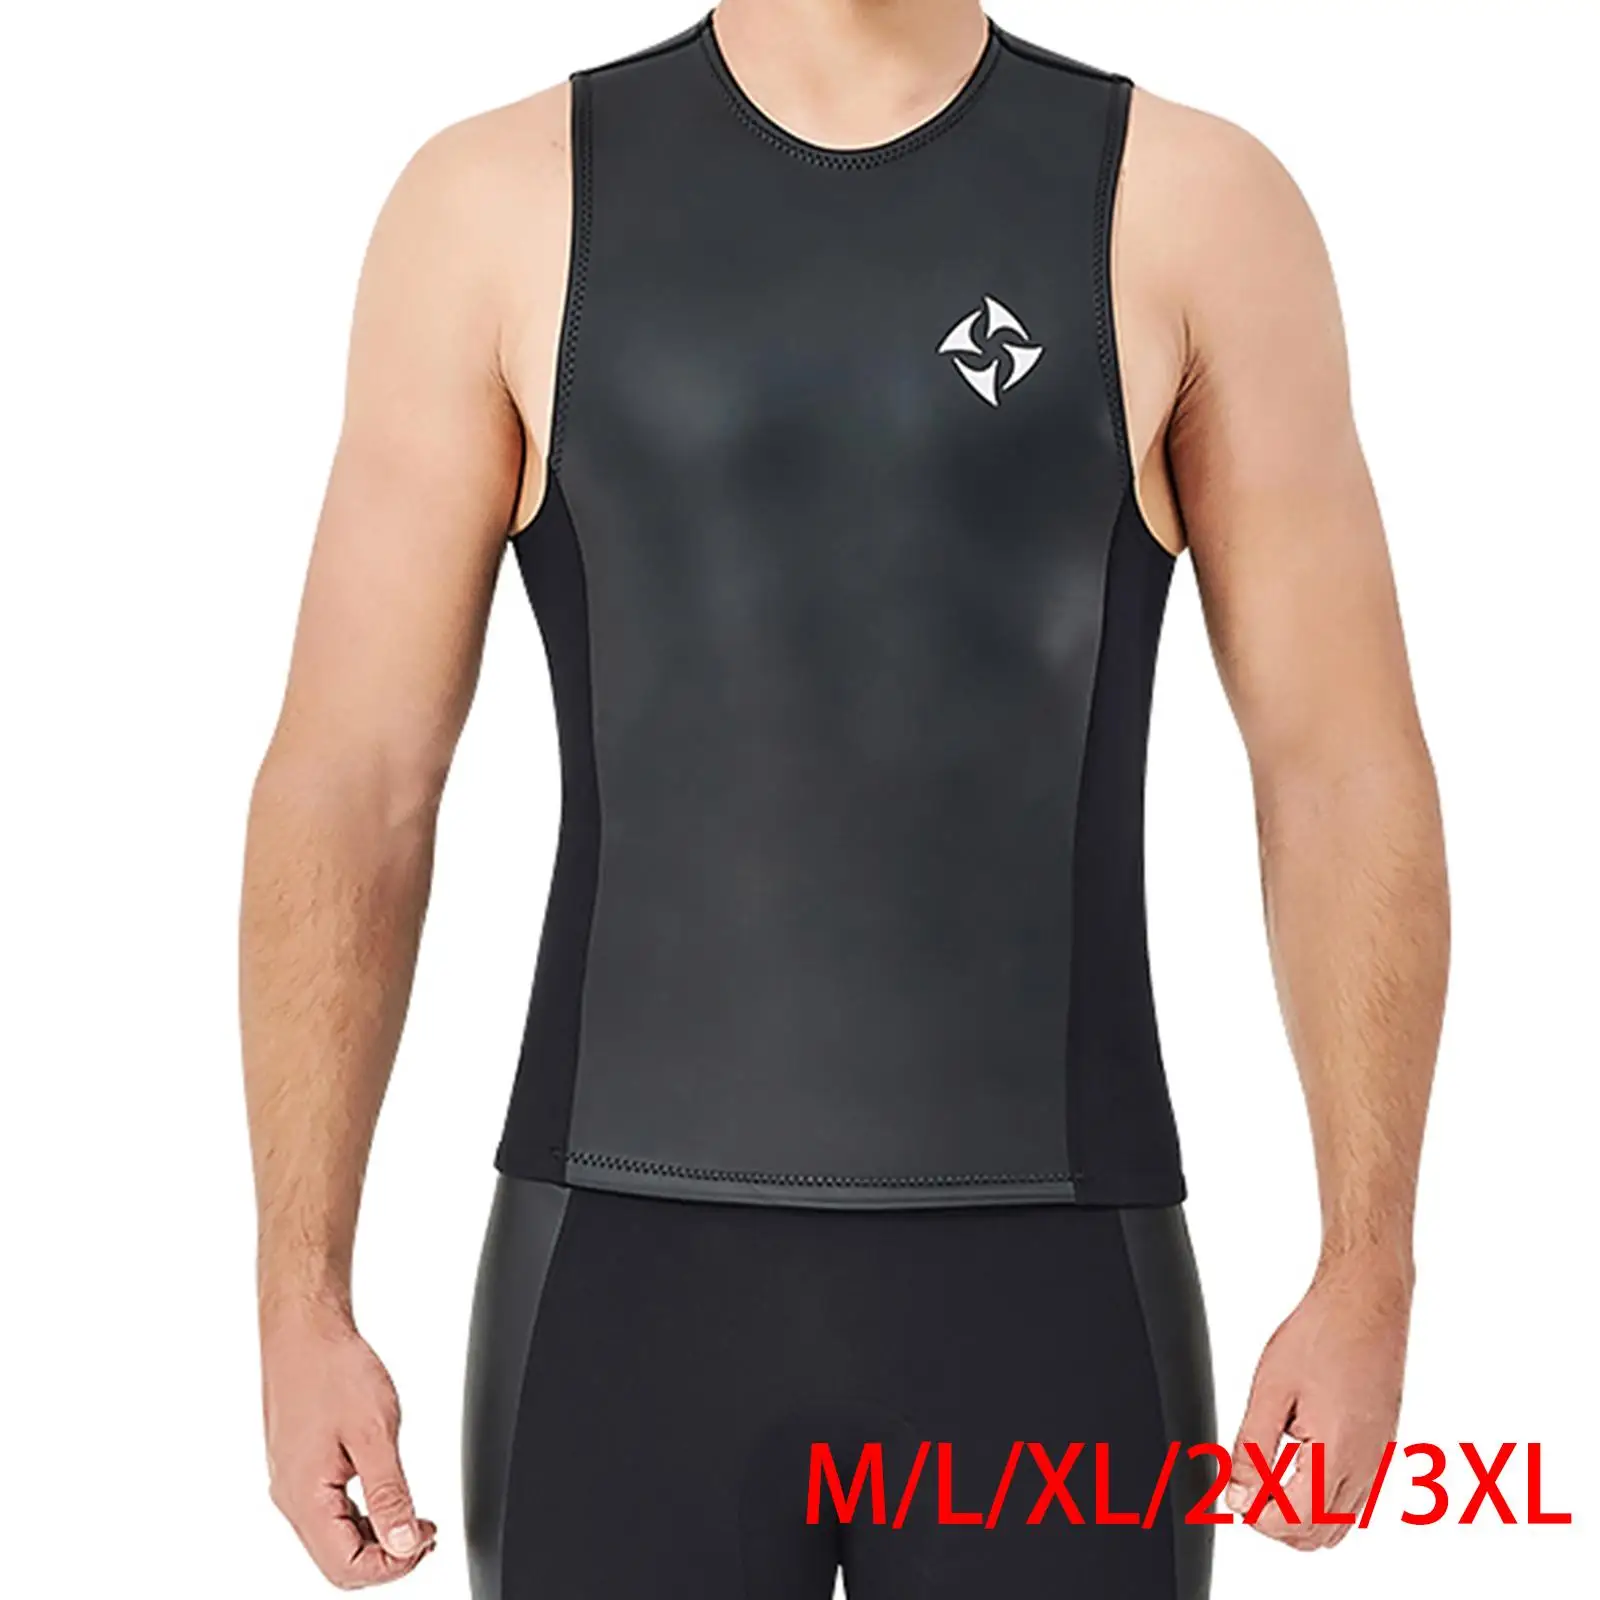 Wetsuit Vest 2mm Neoprene Top Sleeveless for Men Diving Surfing Swimming Sailing